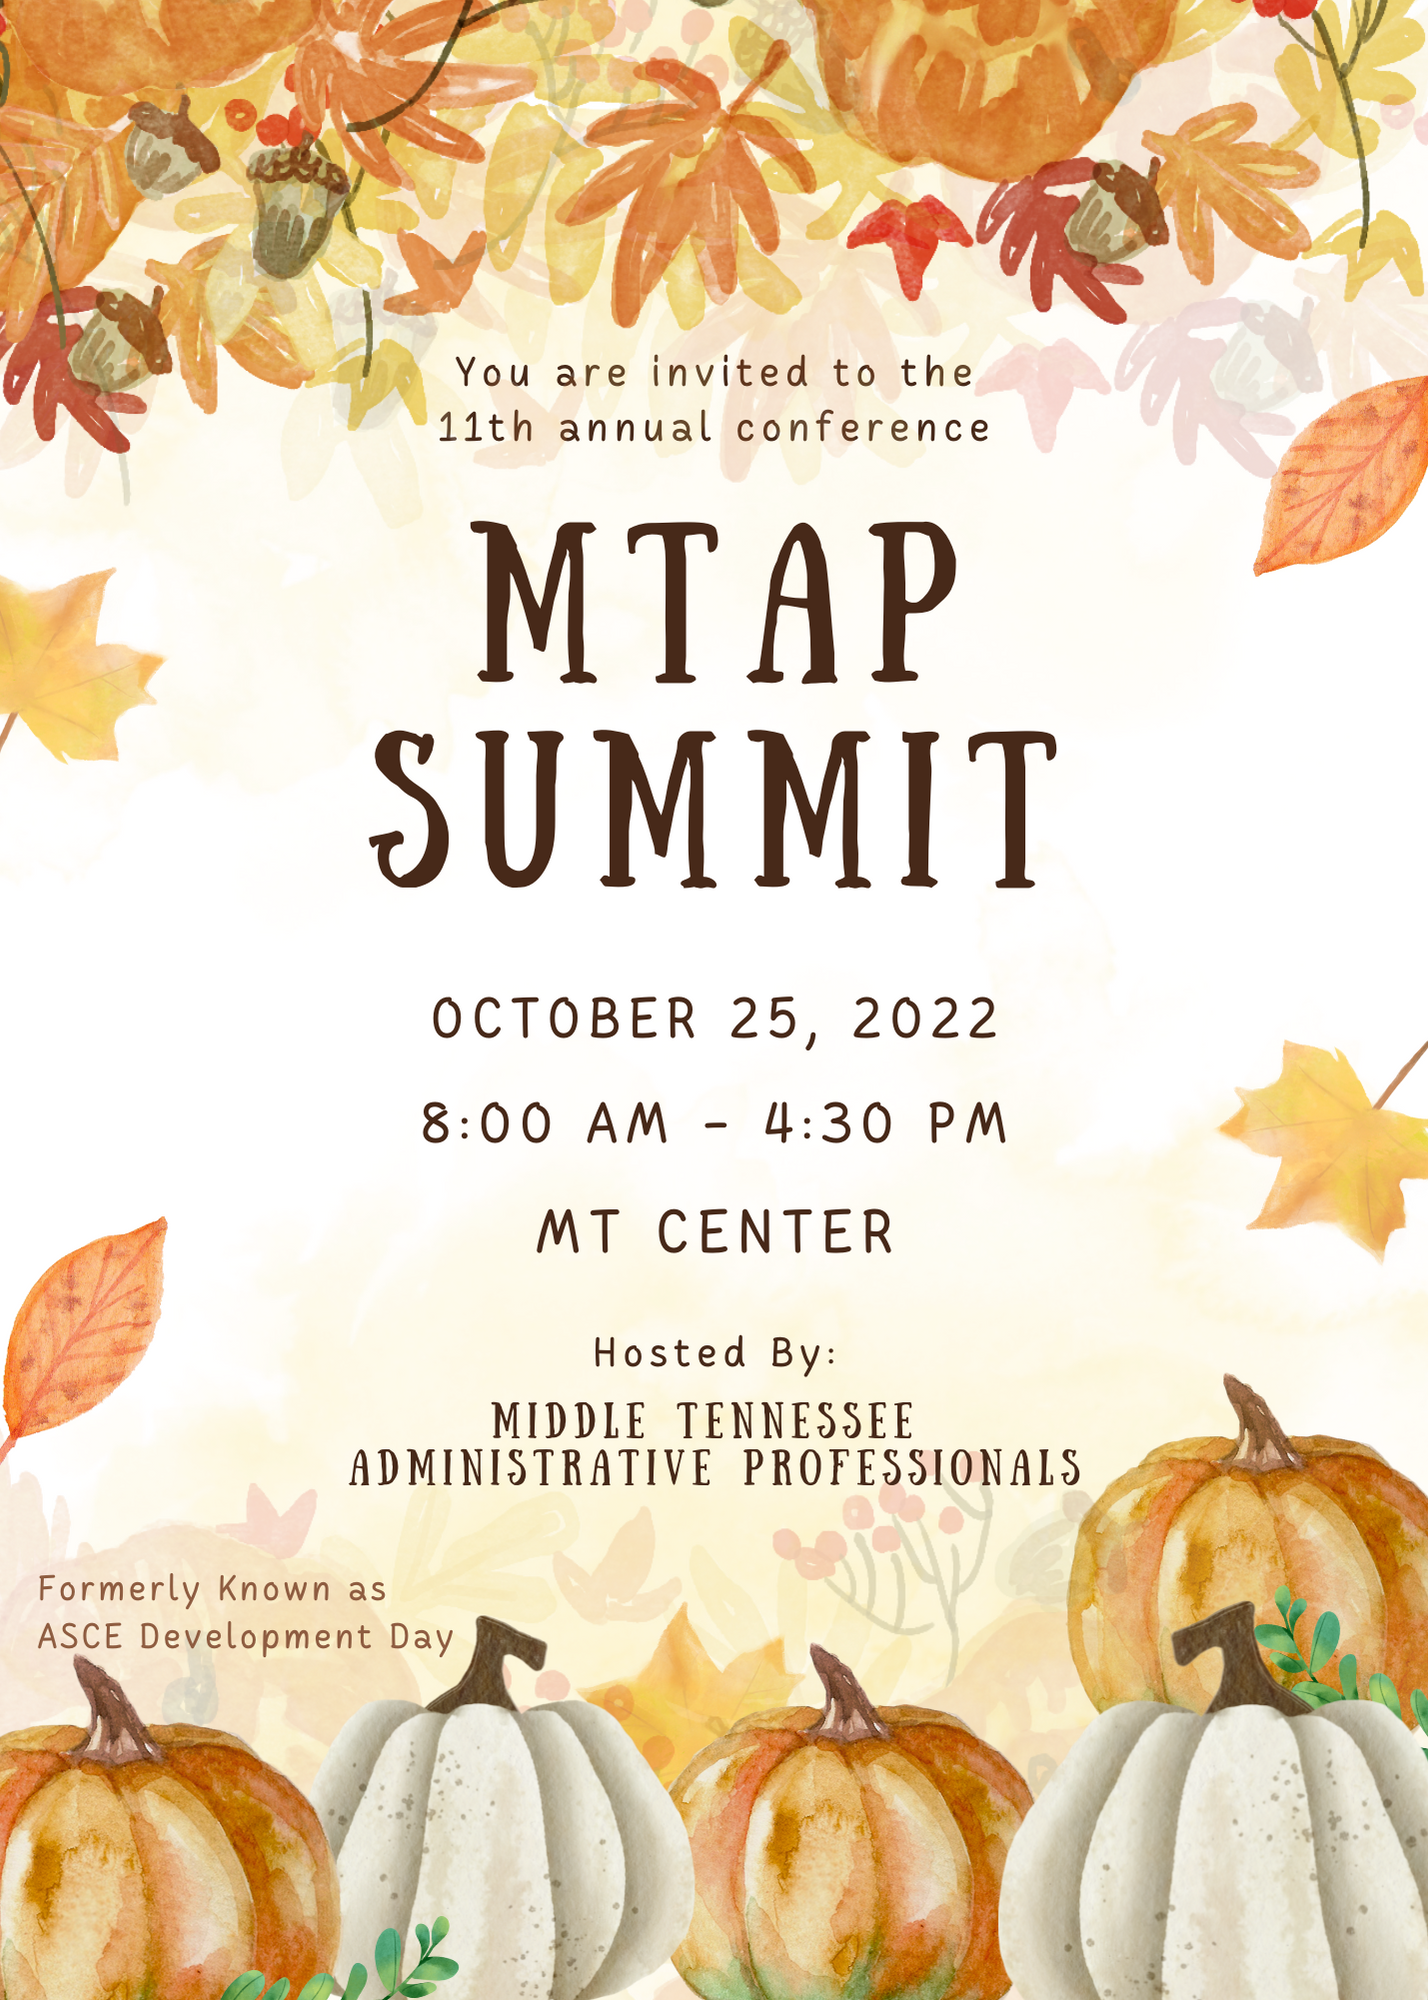 MTAP Summit Info